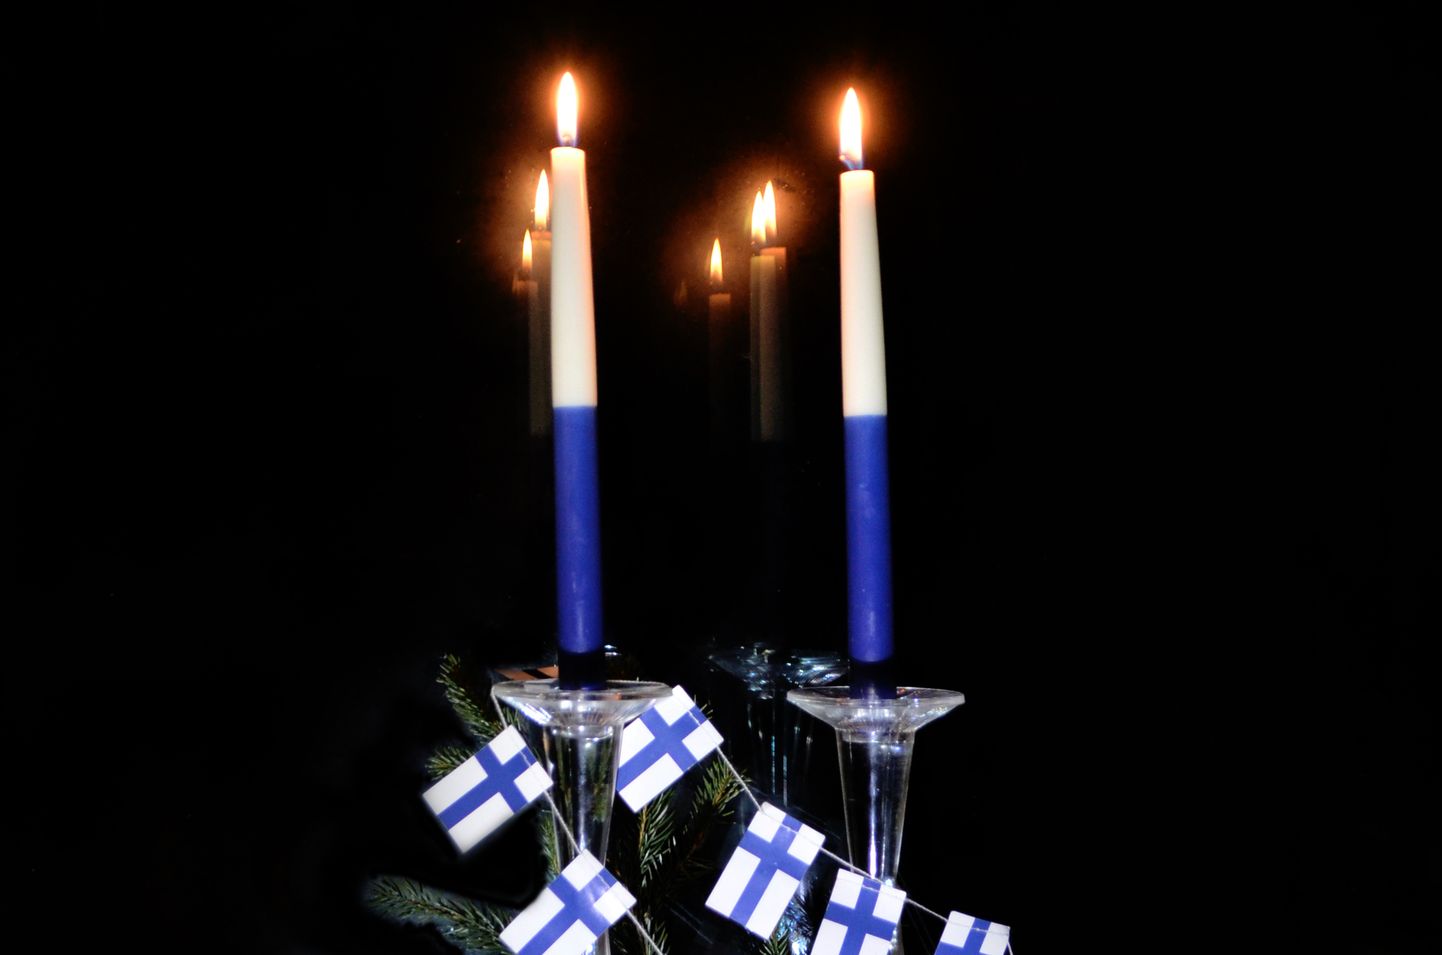 У финнов есть традиция ставить две свечи на подоконники 6 декабря, в День независимости.